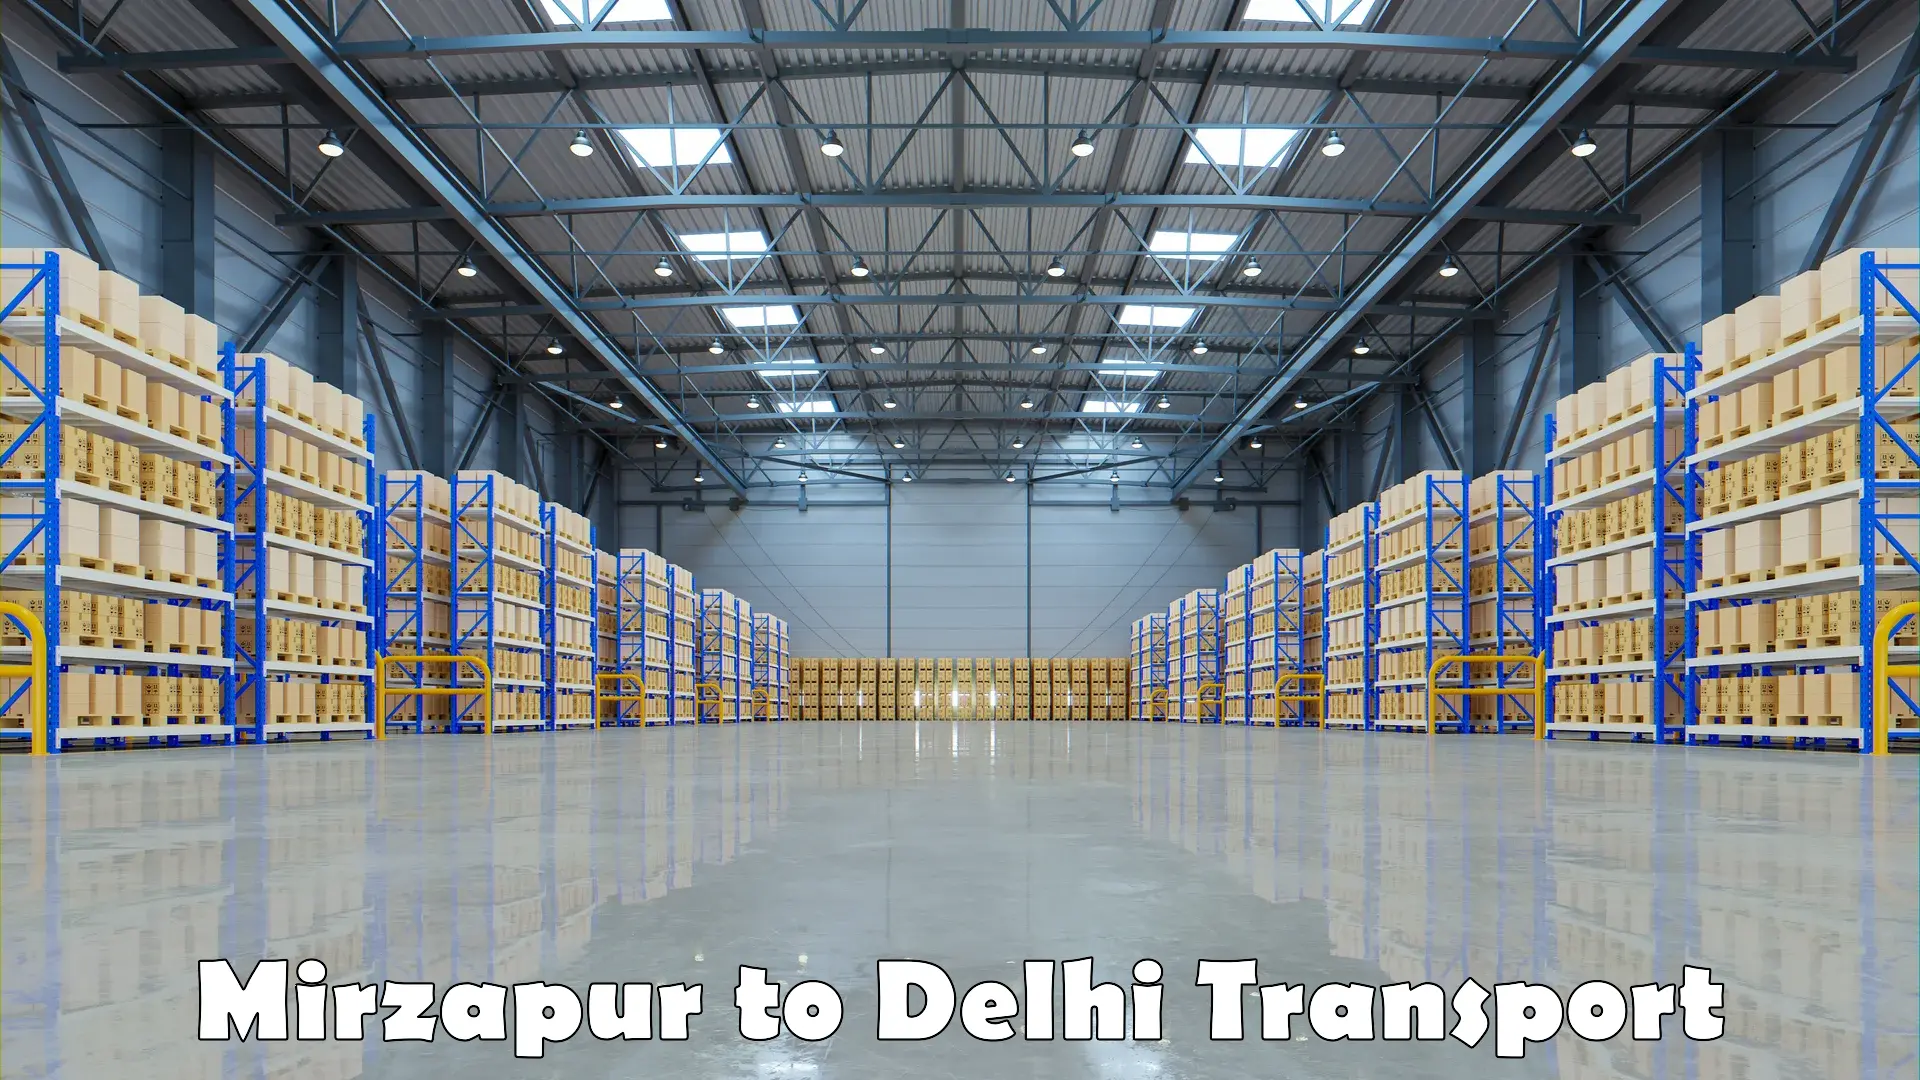 Delivery service Mirzapur to IIT Delhi